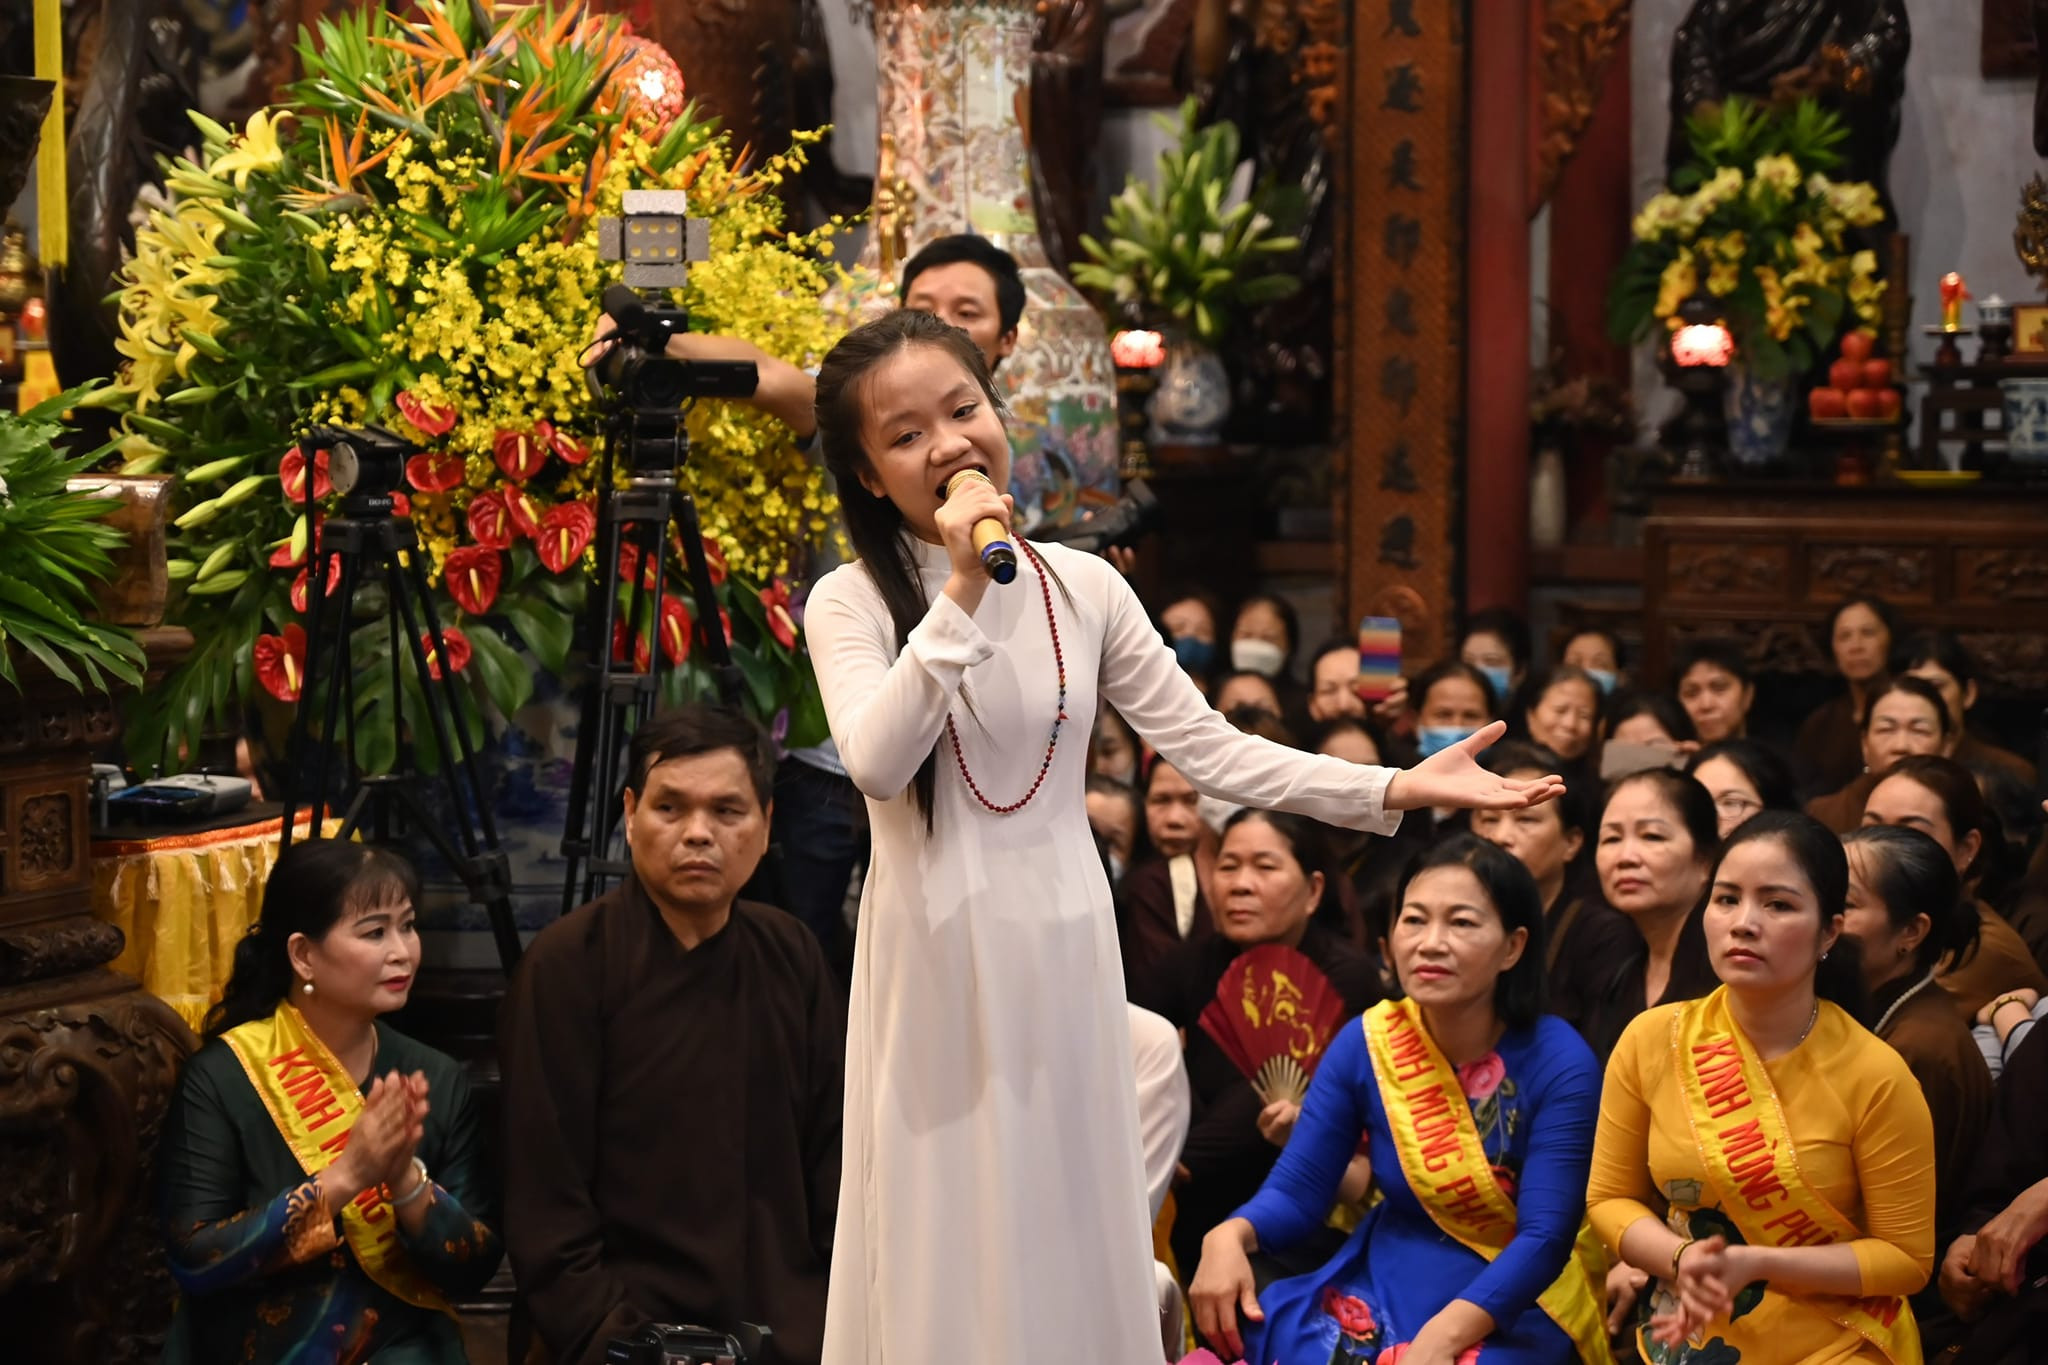 ca nương Đặng Tú Thanh thường đi hát phục vụ các chùa